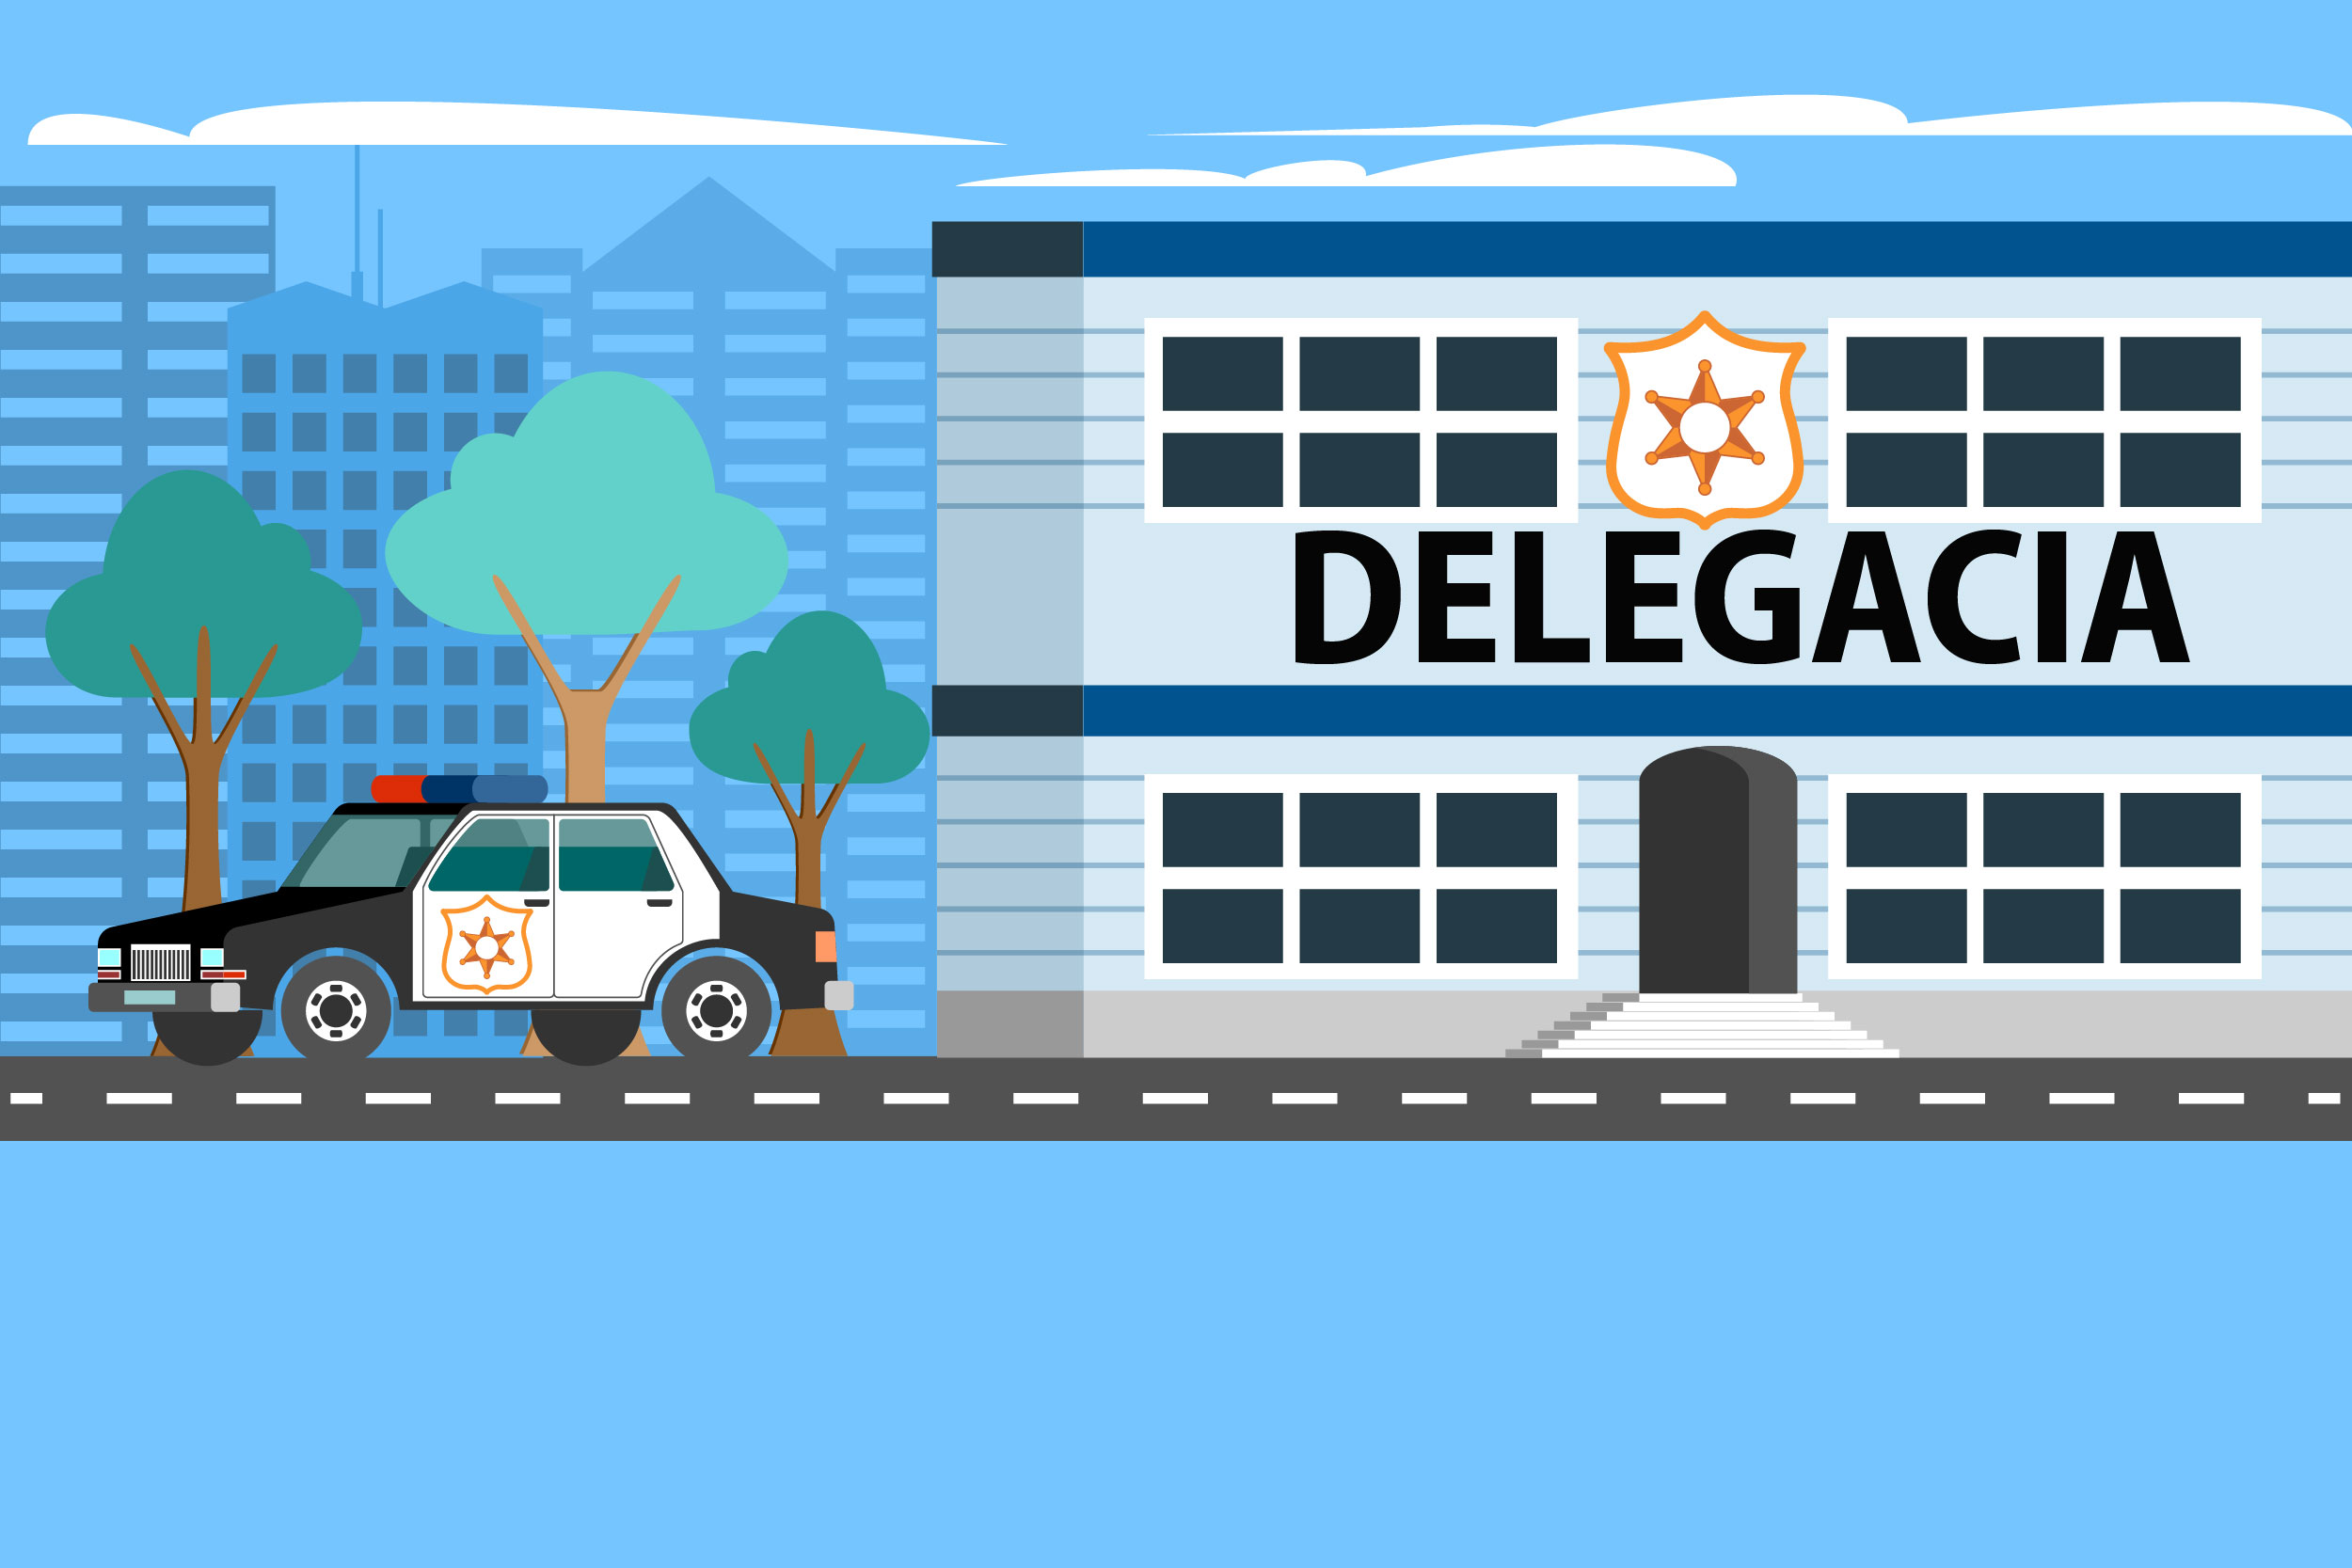 Ilustração de prédio com o nome "delegacia", com carro de polícia na frente